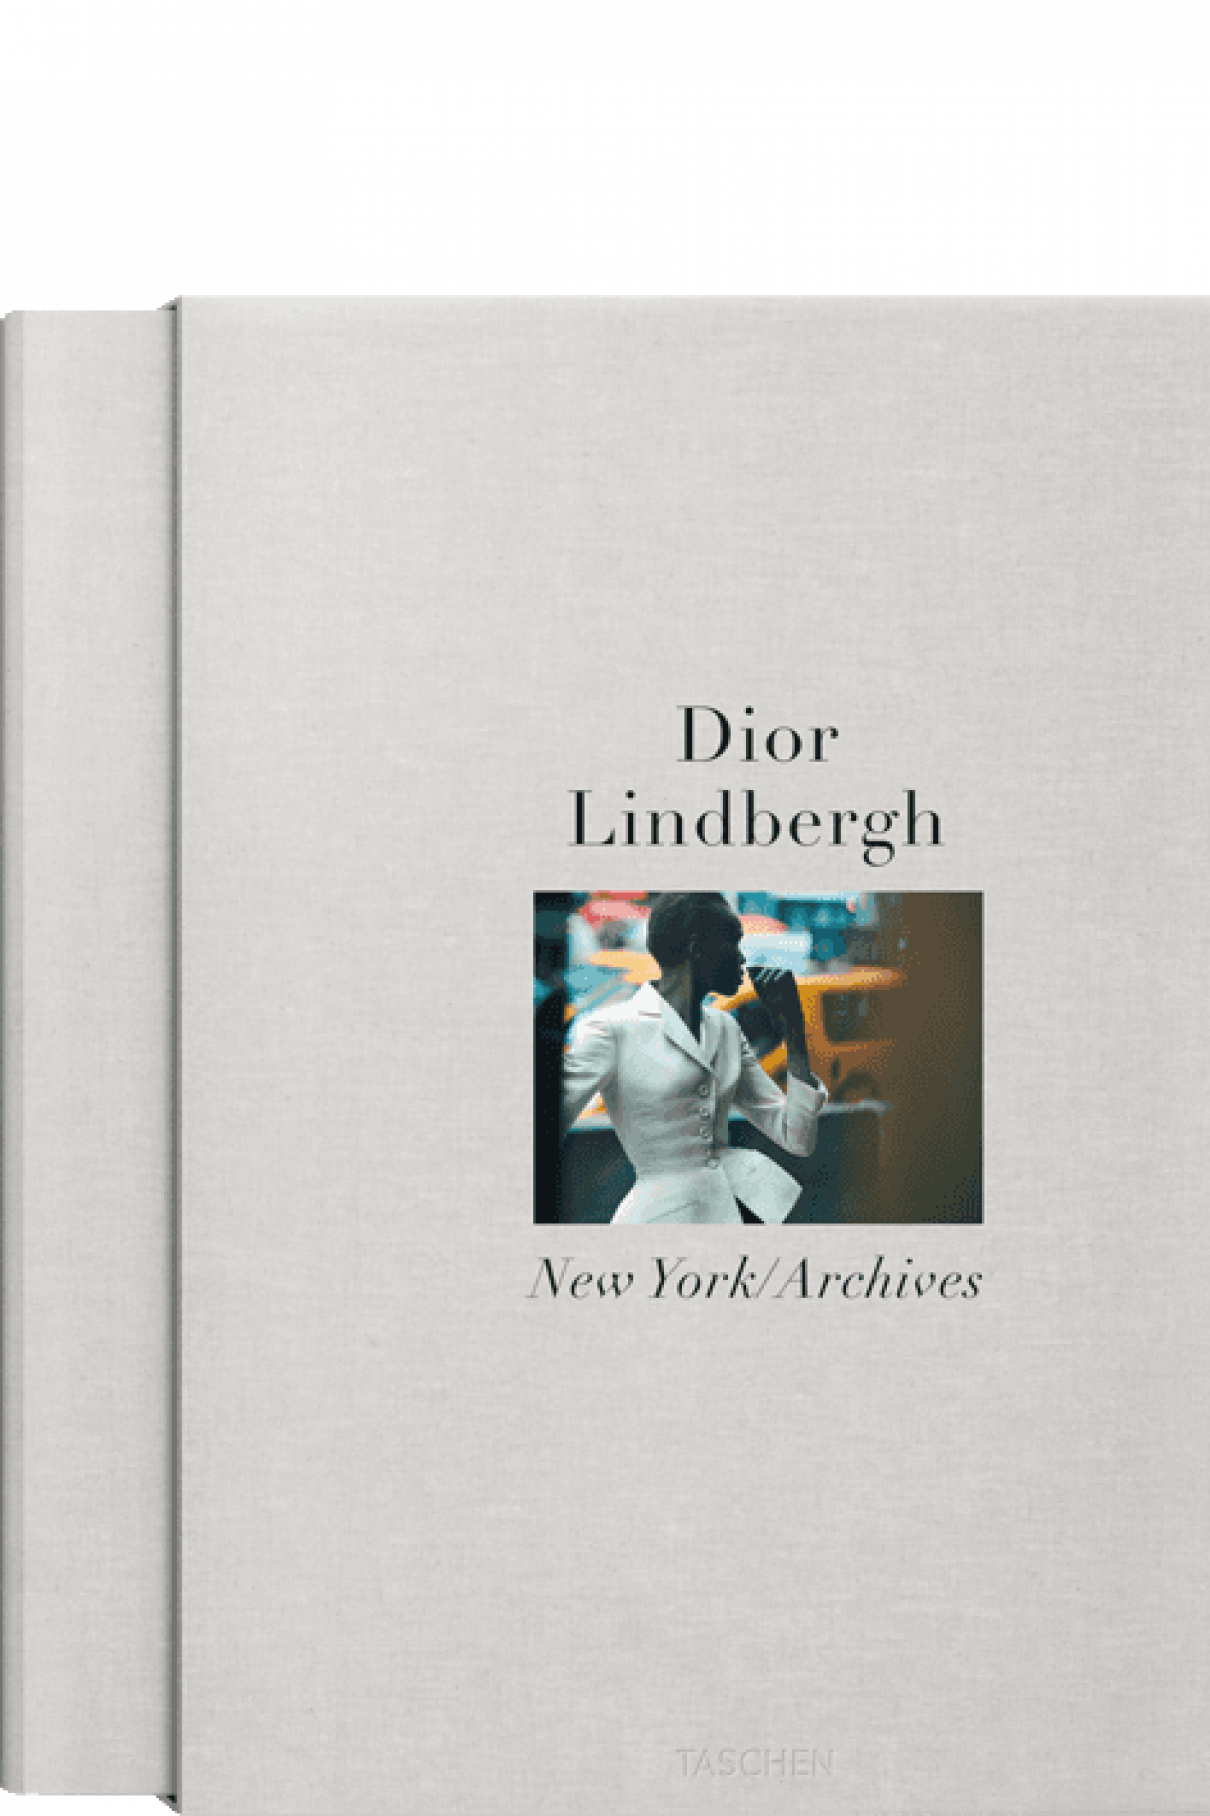 Книга Taschen Dior. Lindbergh: New York/Archives , арт. 9783836579902 купить в интернет-магазине